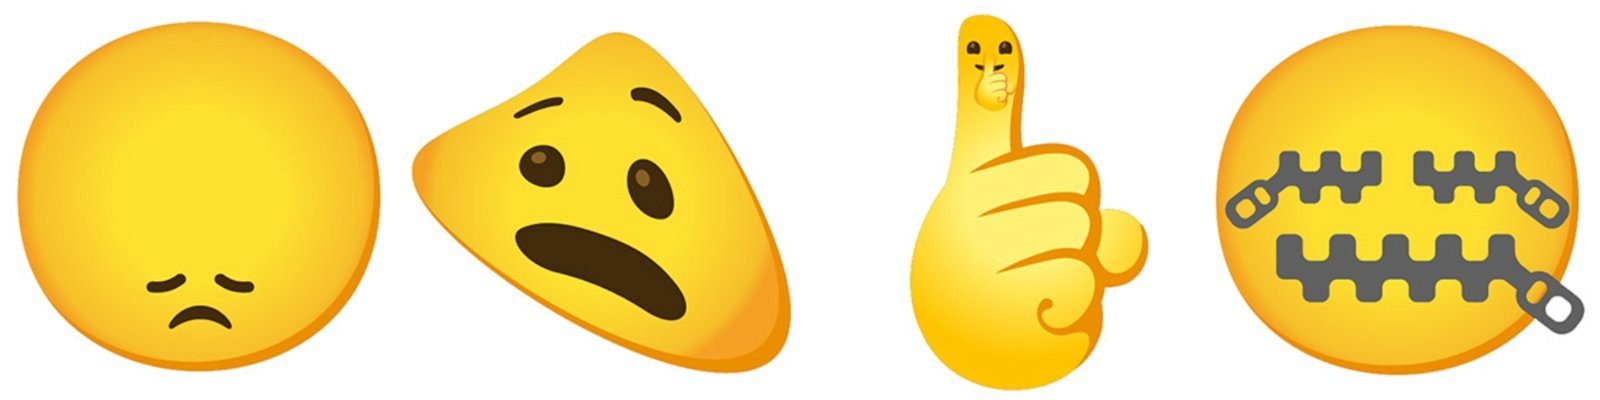 emojis combinados de Gboard 5